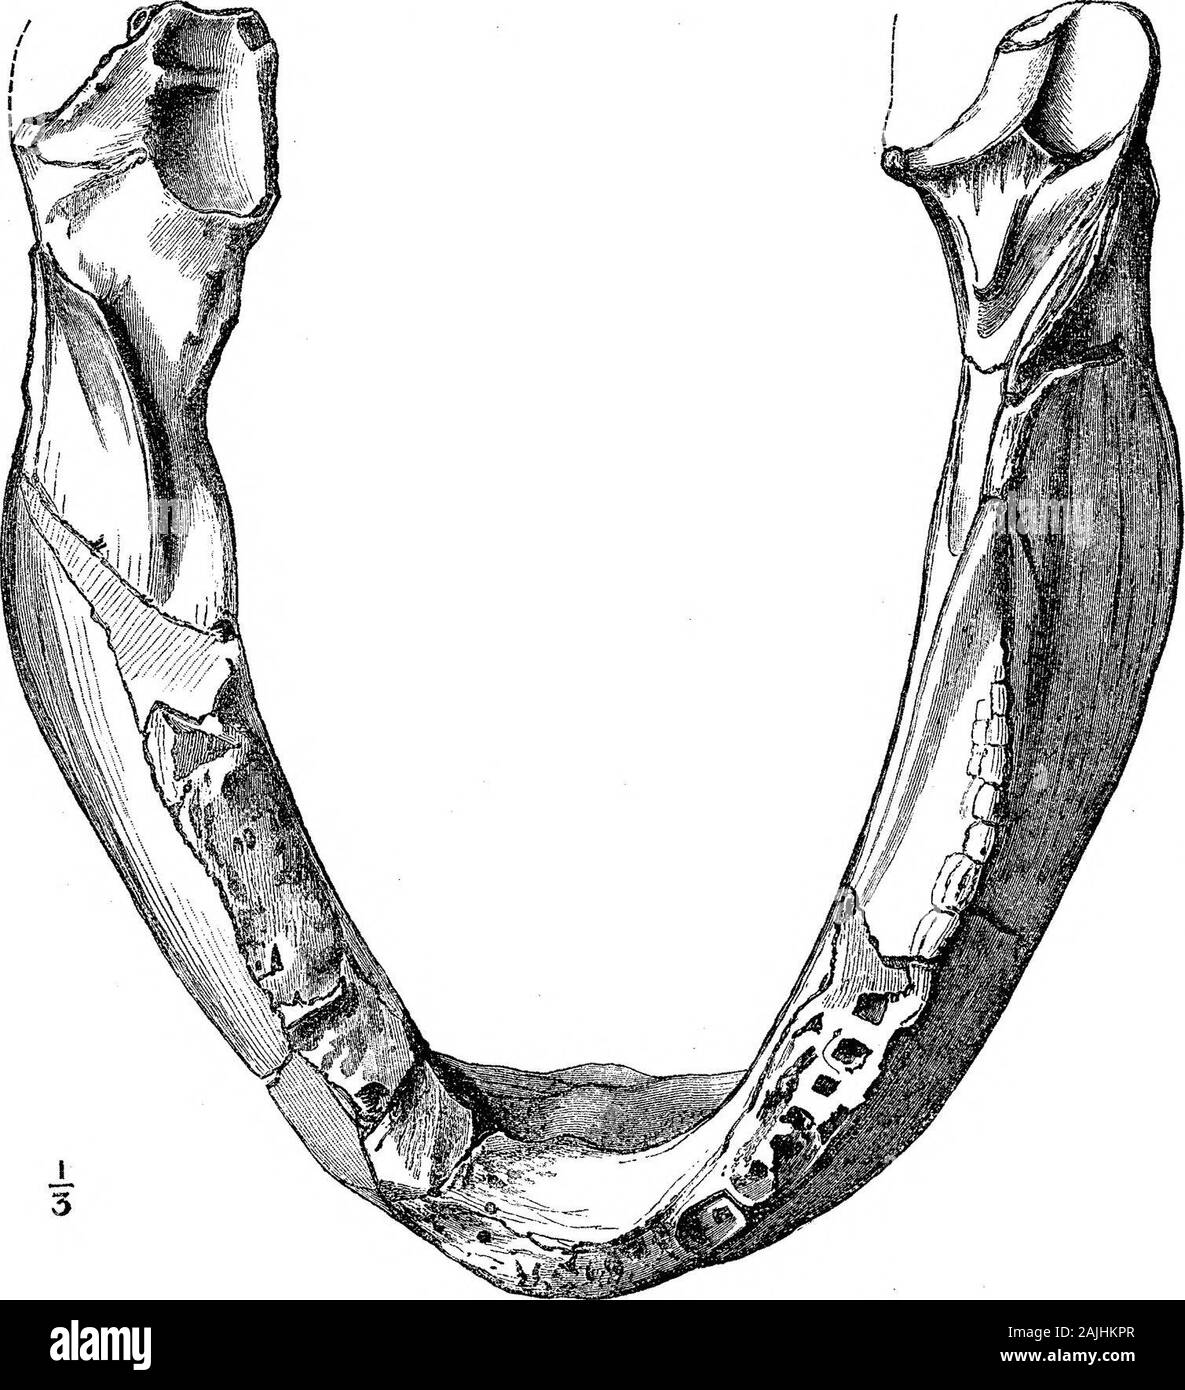 Ricerche sulla struttura, l'organizzazione e la classificazione dei fossili di Reptilia VII ulteriori osservazioni sul Pareiasaurus . ront.come essi divergono verso l'esterno e indietro, la ganascia è alquanto ritorte, in modo che il bordo itsinferior viene effettuata lateralmente oltre il confine alveolare. In tal modo il alveolarcontour è un molto più piccolo e più curva lanceolate rispetto al contorno della base del mdcccxcii.-b, 2 u 330 PROFESSORE H. GH SEELEY OK La struttura, l'organizzazione, la ganascia inferiore. Posteriormente, le estremità articolari approccio un po' verso la vicenda. La misurazione esterna lungo i denti, dal Foto Stock